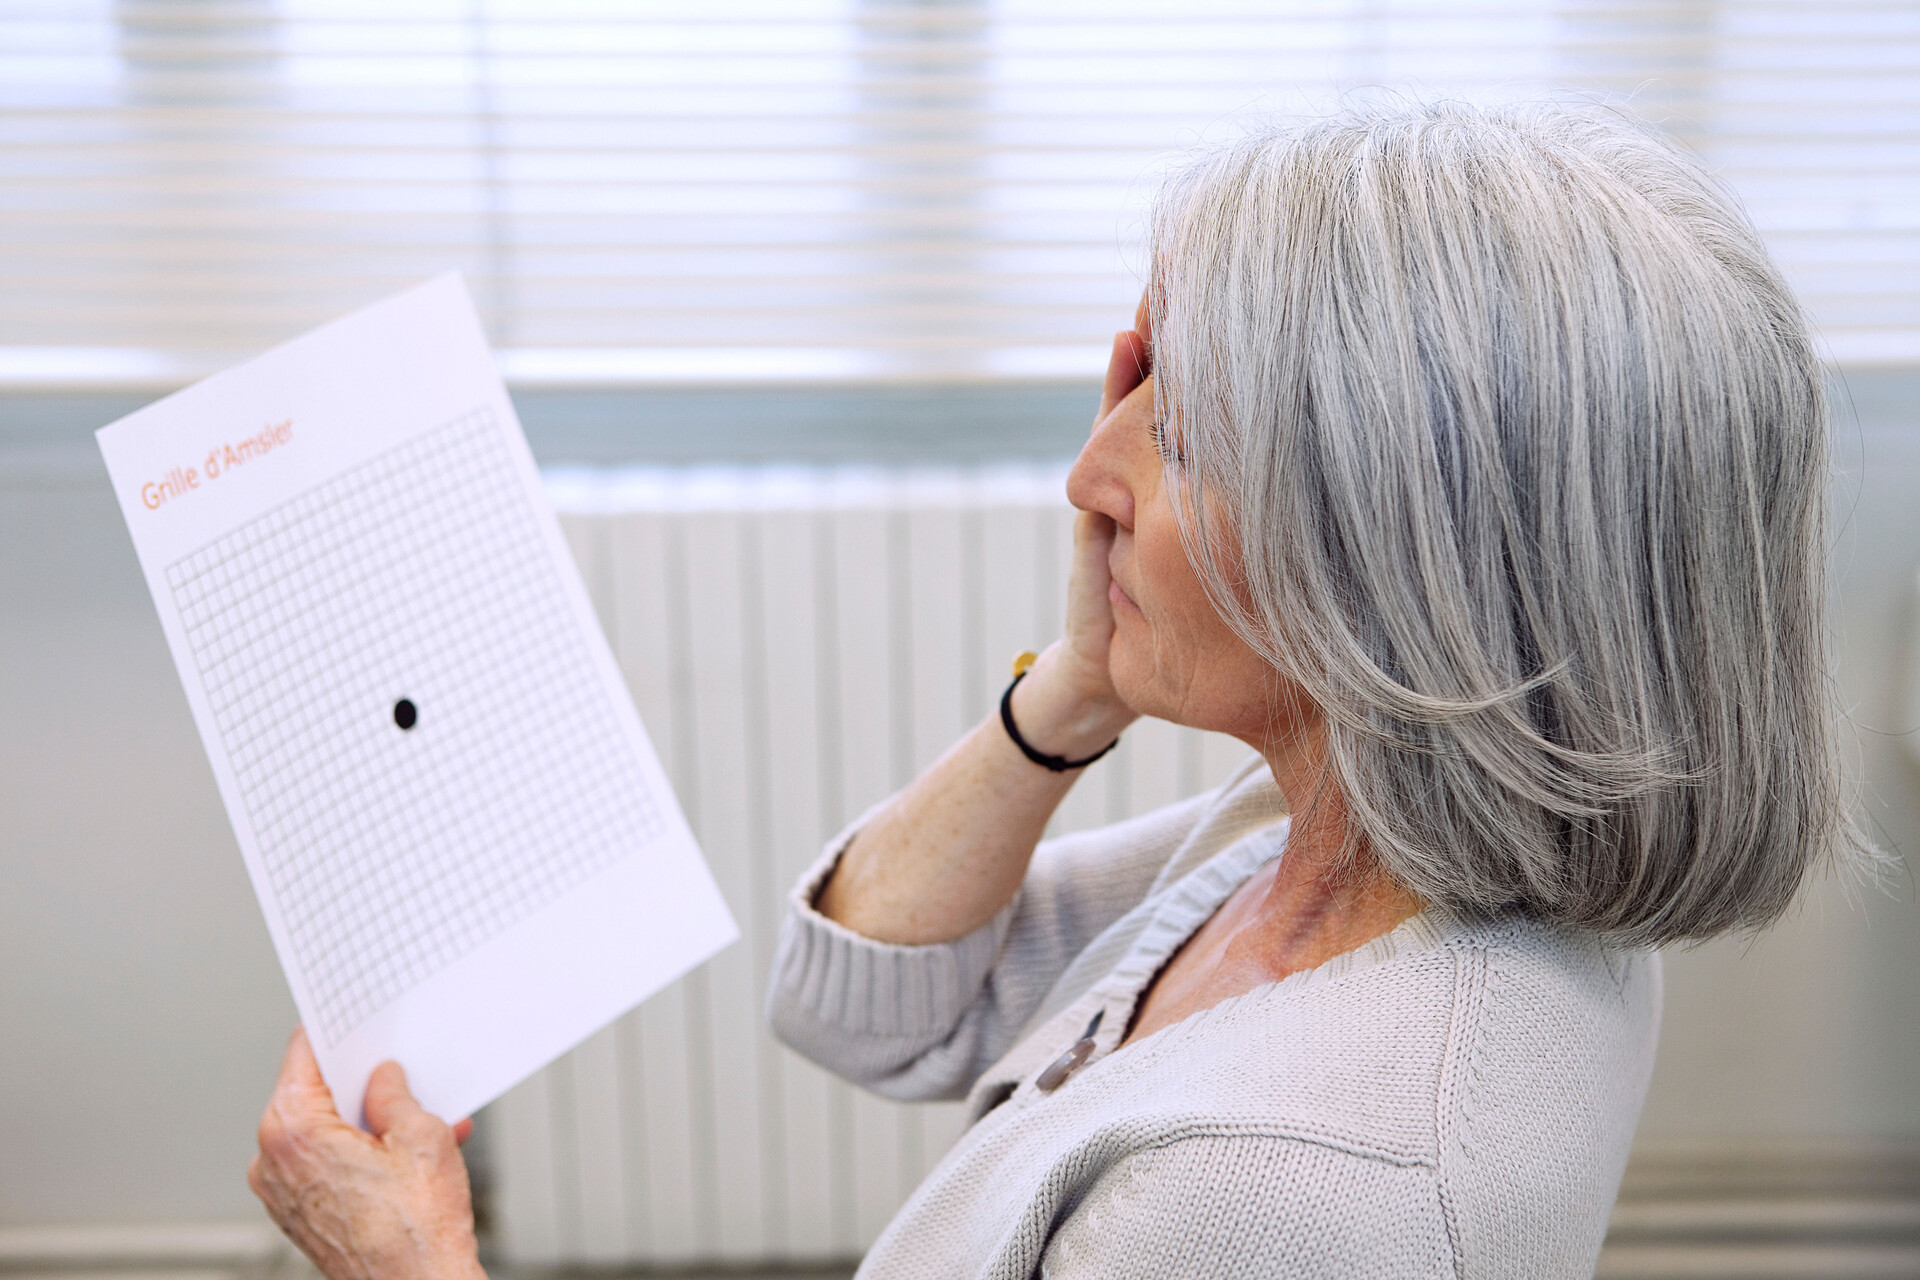 Kvinna håller för ena ögat och tittar på Amsler-testet